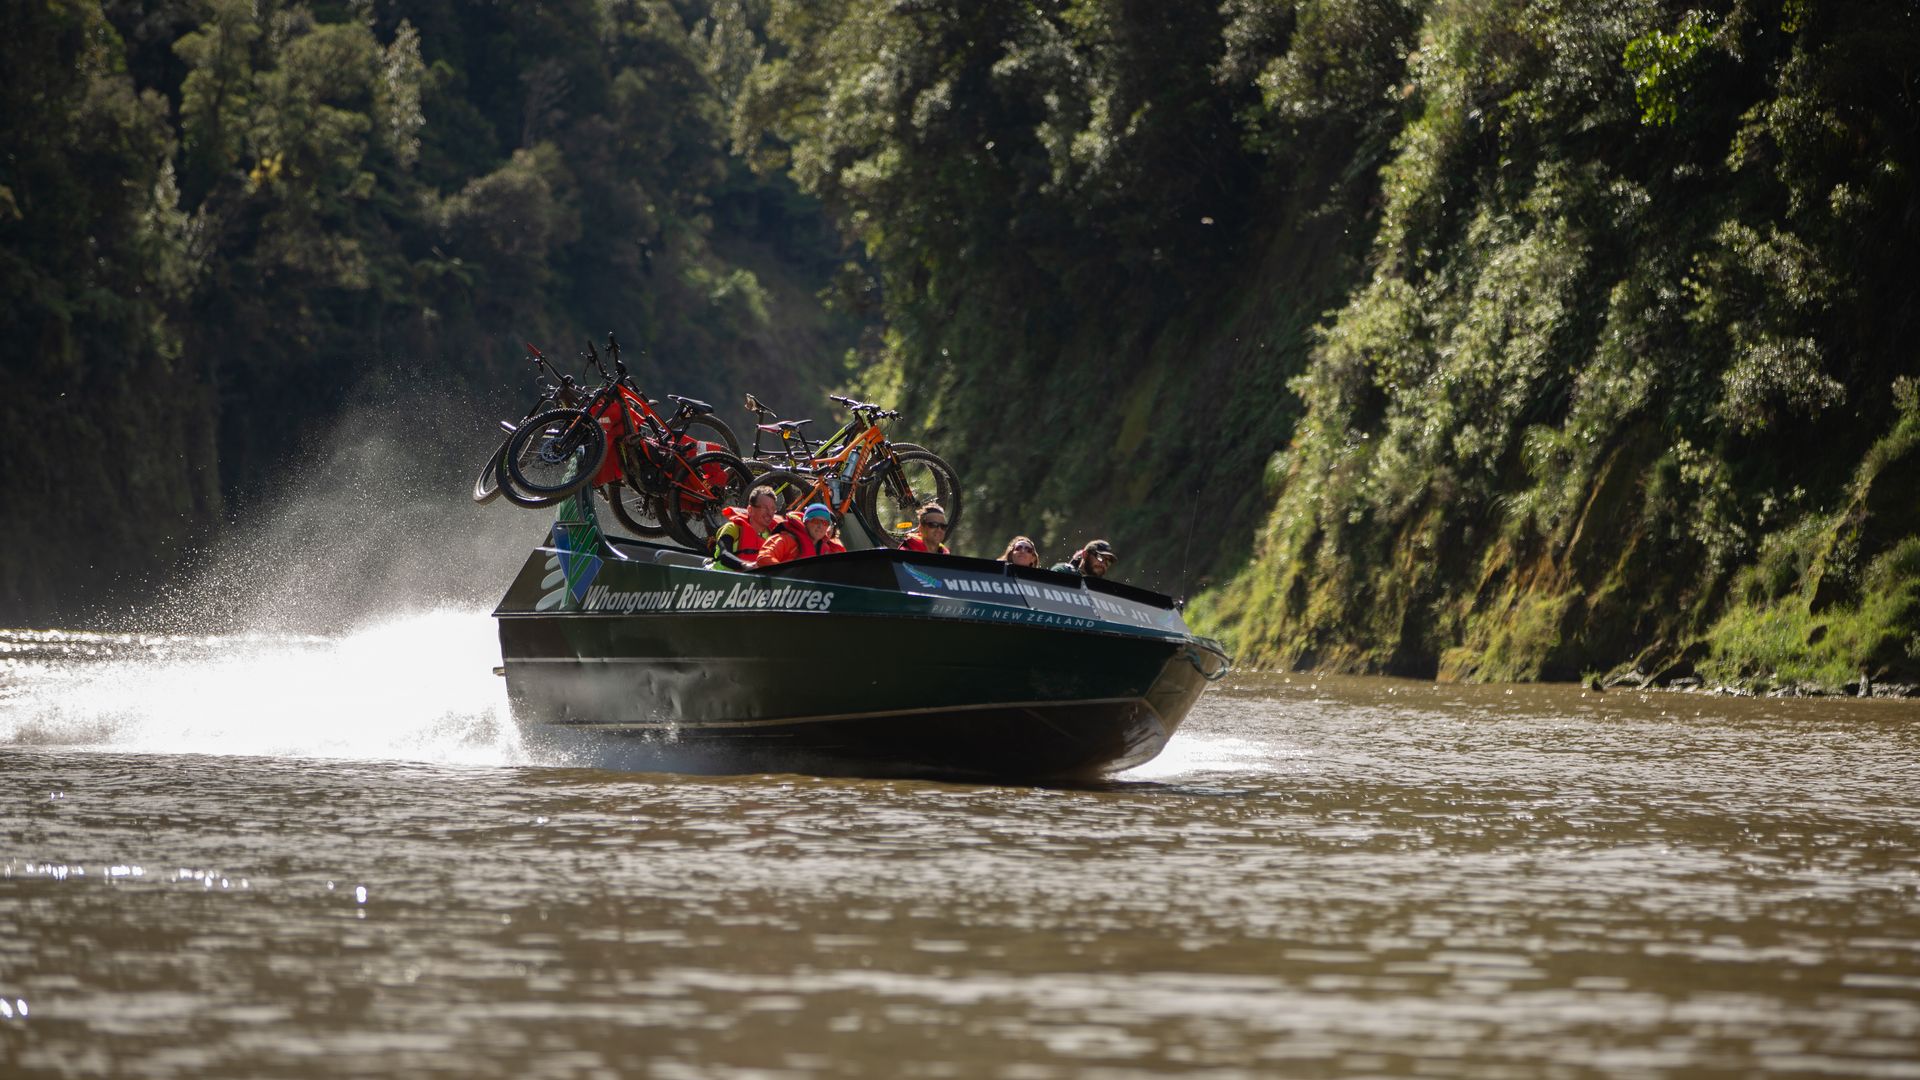 Whanganui River Jet Boat and Bridge To Nowhere - Visit Ruapehu (1).jpg